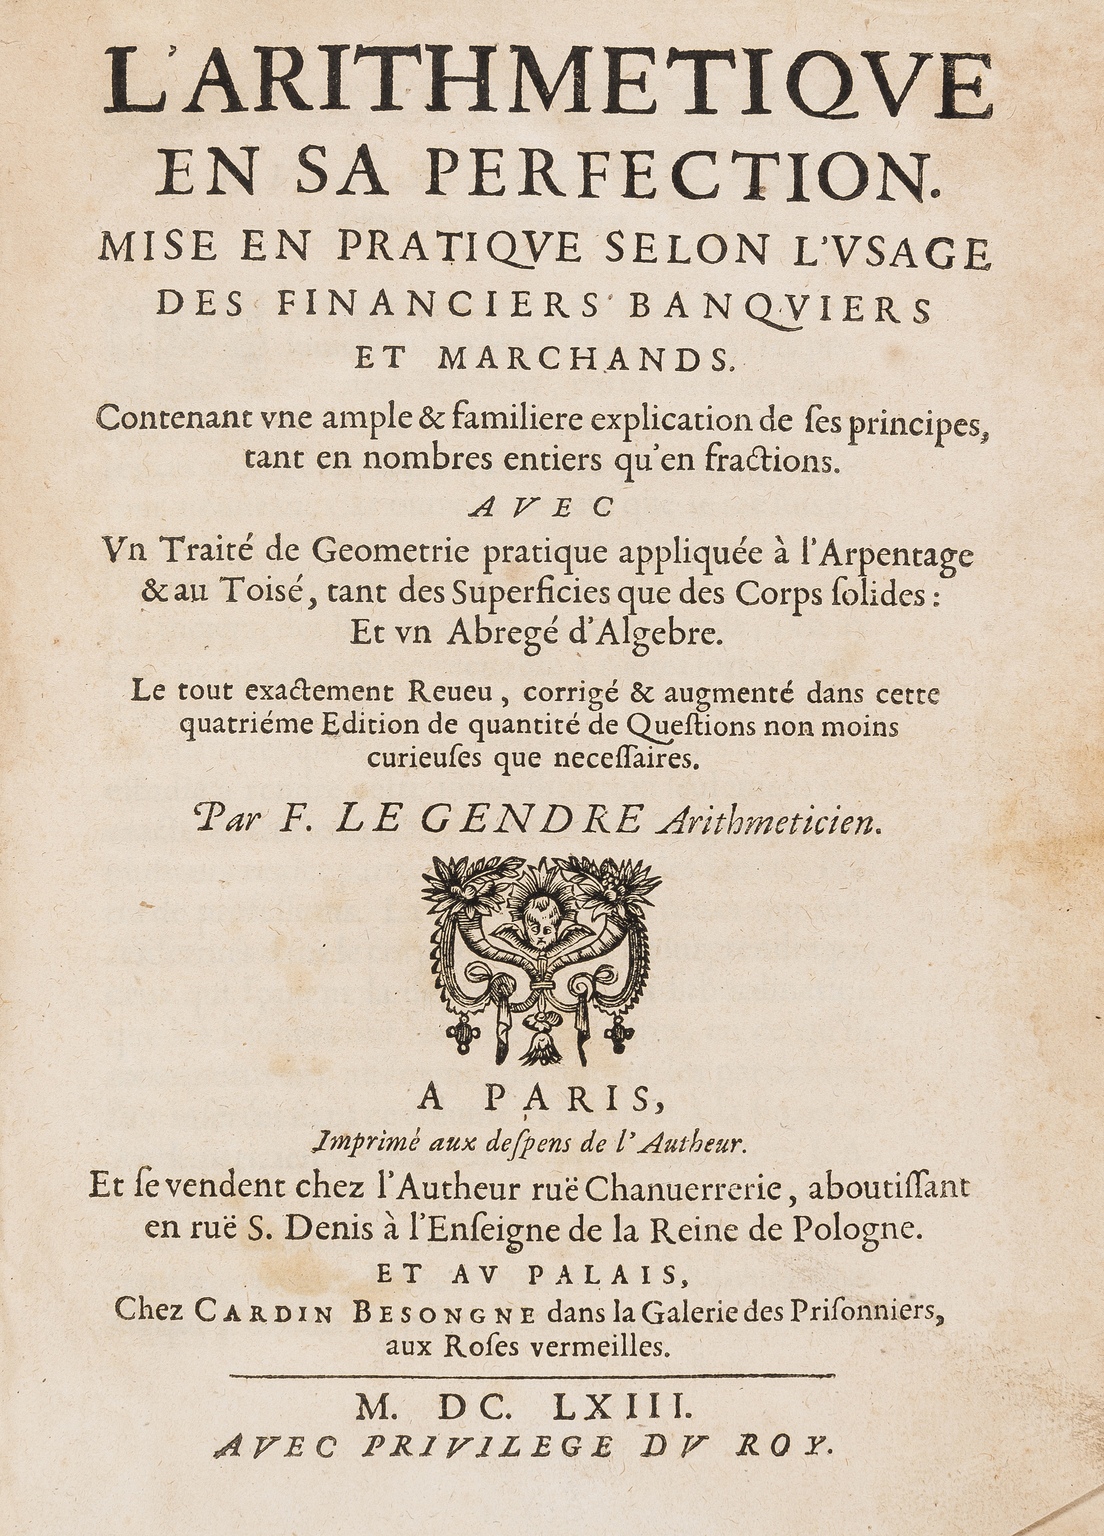 Le Gendre (François) L'Arithmetique en sa Perfection, second edition, Paris, Autheur & Cardin …